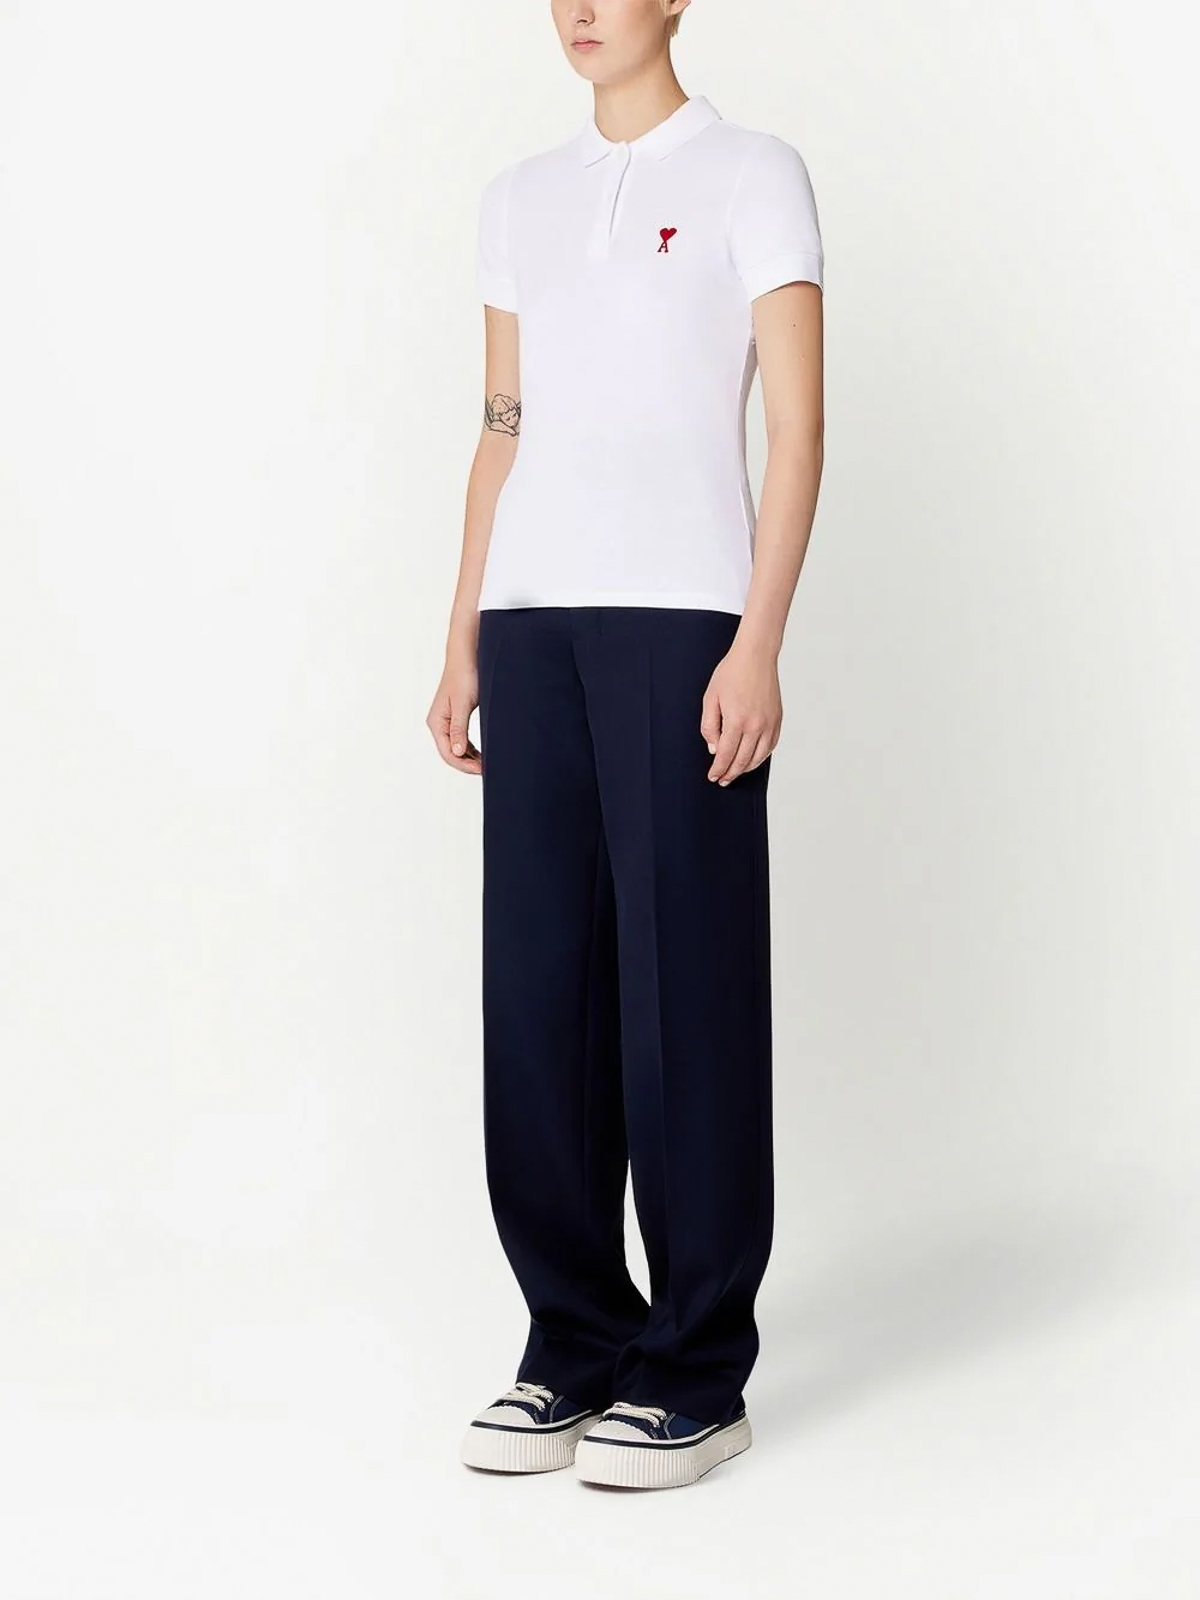 ポロシャツ Ami Paris - ポロシャツ - 白 - FPL001760 | THEBS